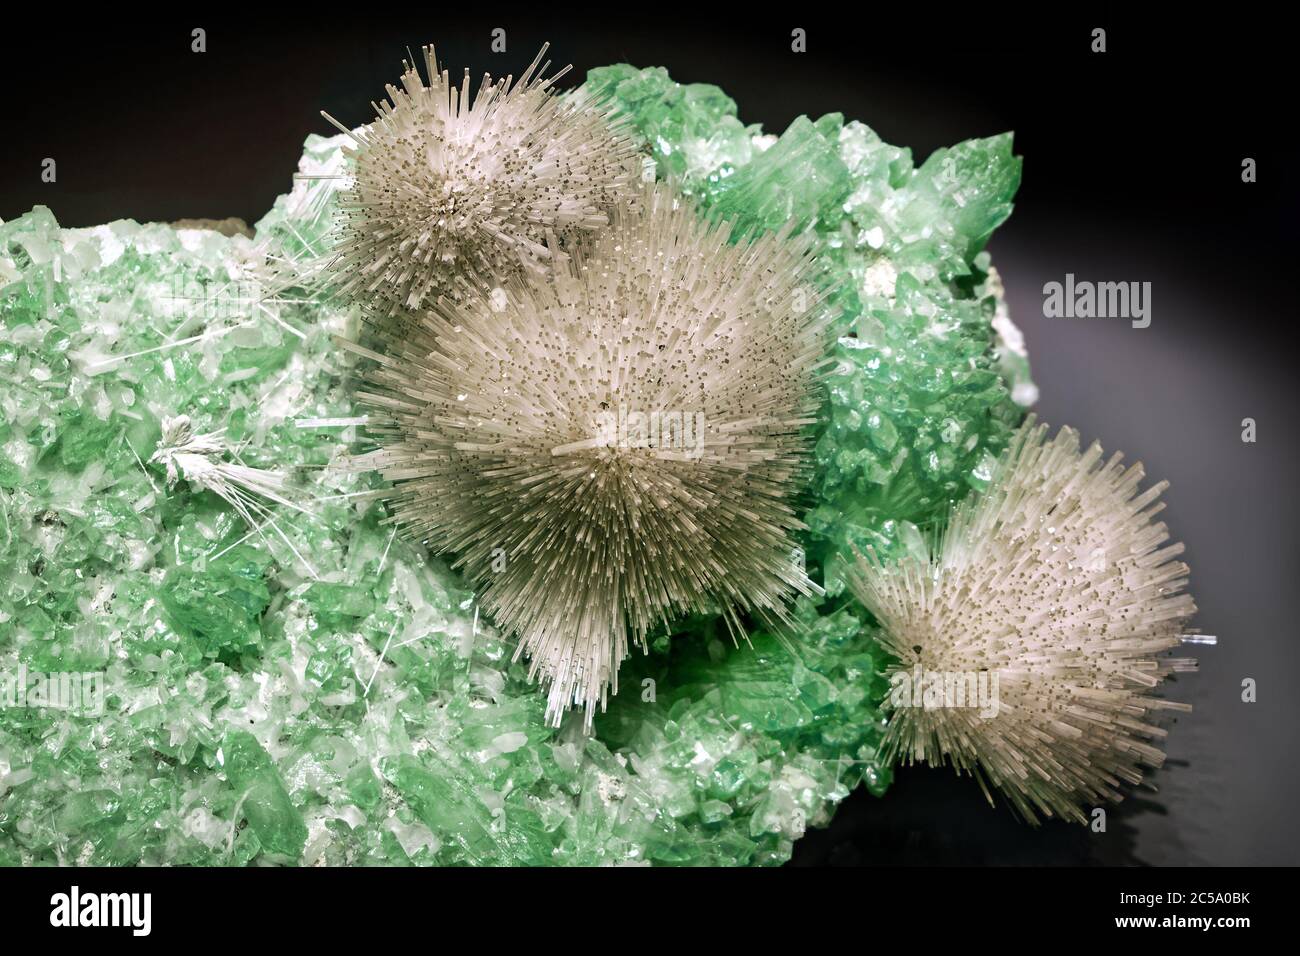 Cristales de mesolita localizados en cristales verdes de fluorapofilita Foto de stock